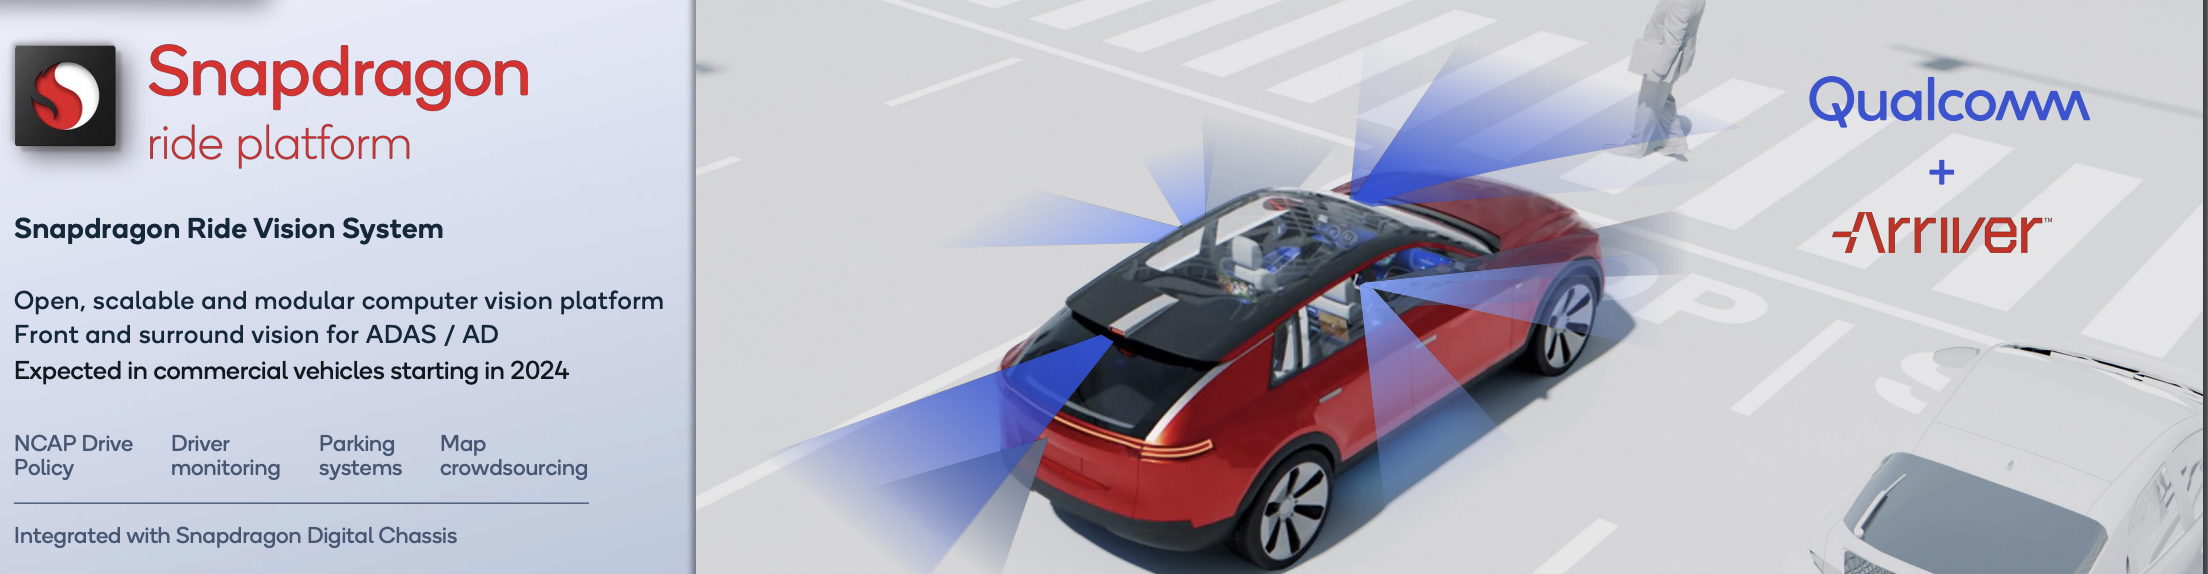  Qualcomm en CES 2022: alianzas automotrices, XR y el futuro de la industria de computo